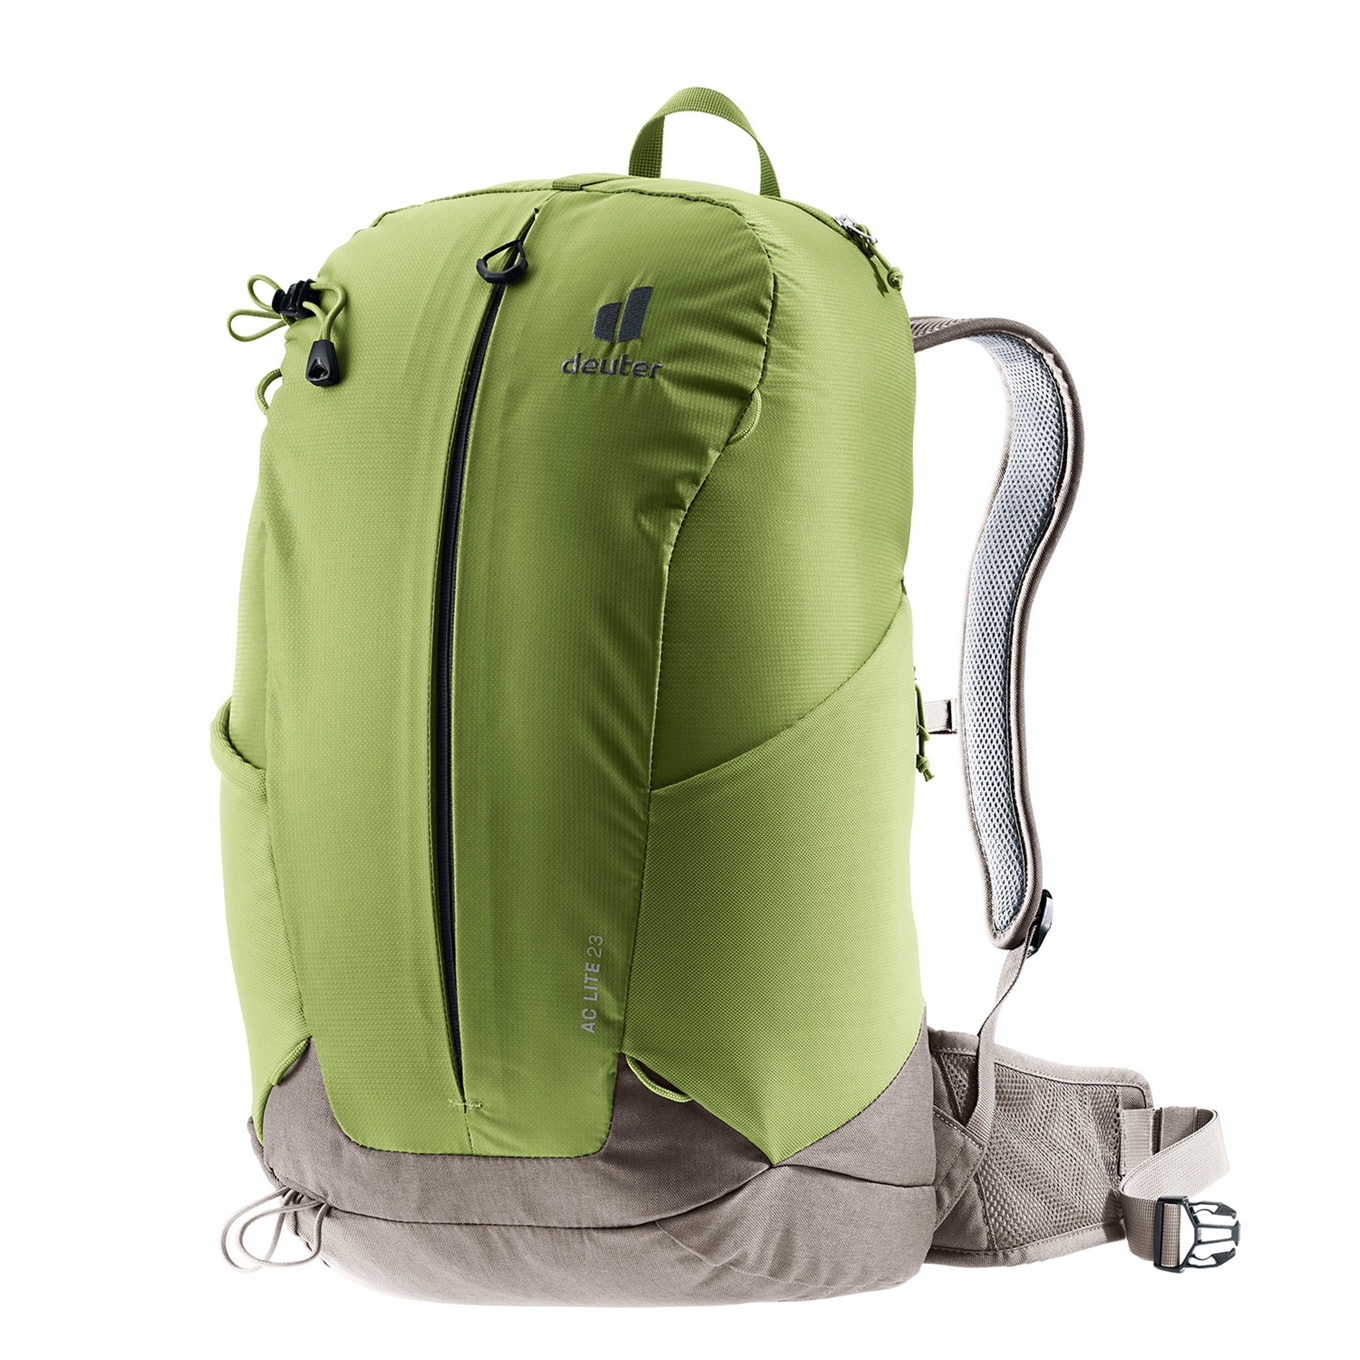 praktijk Knooppunt eer Deuter AC Lite 23 Backpack meadow-pepper | Travelbags.nl